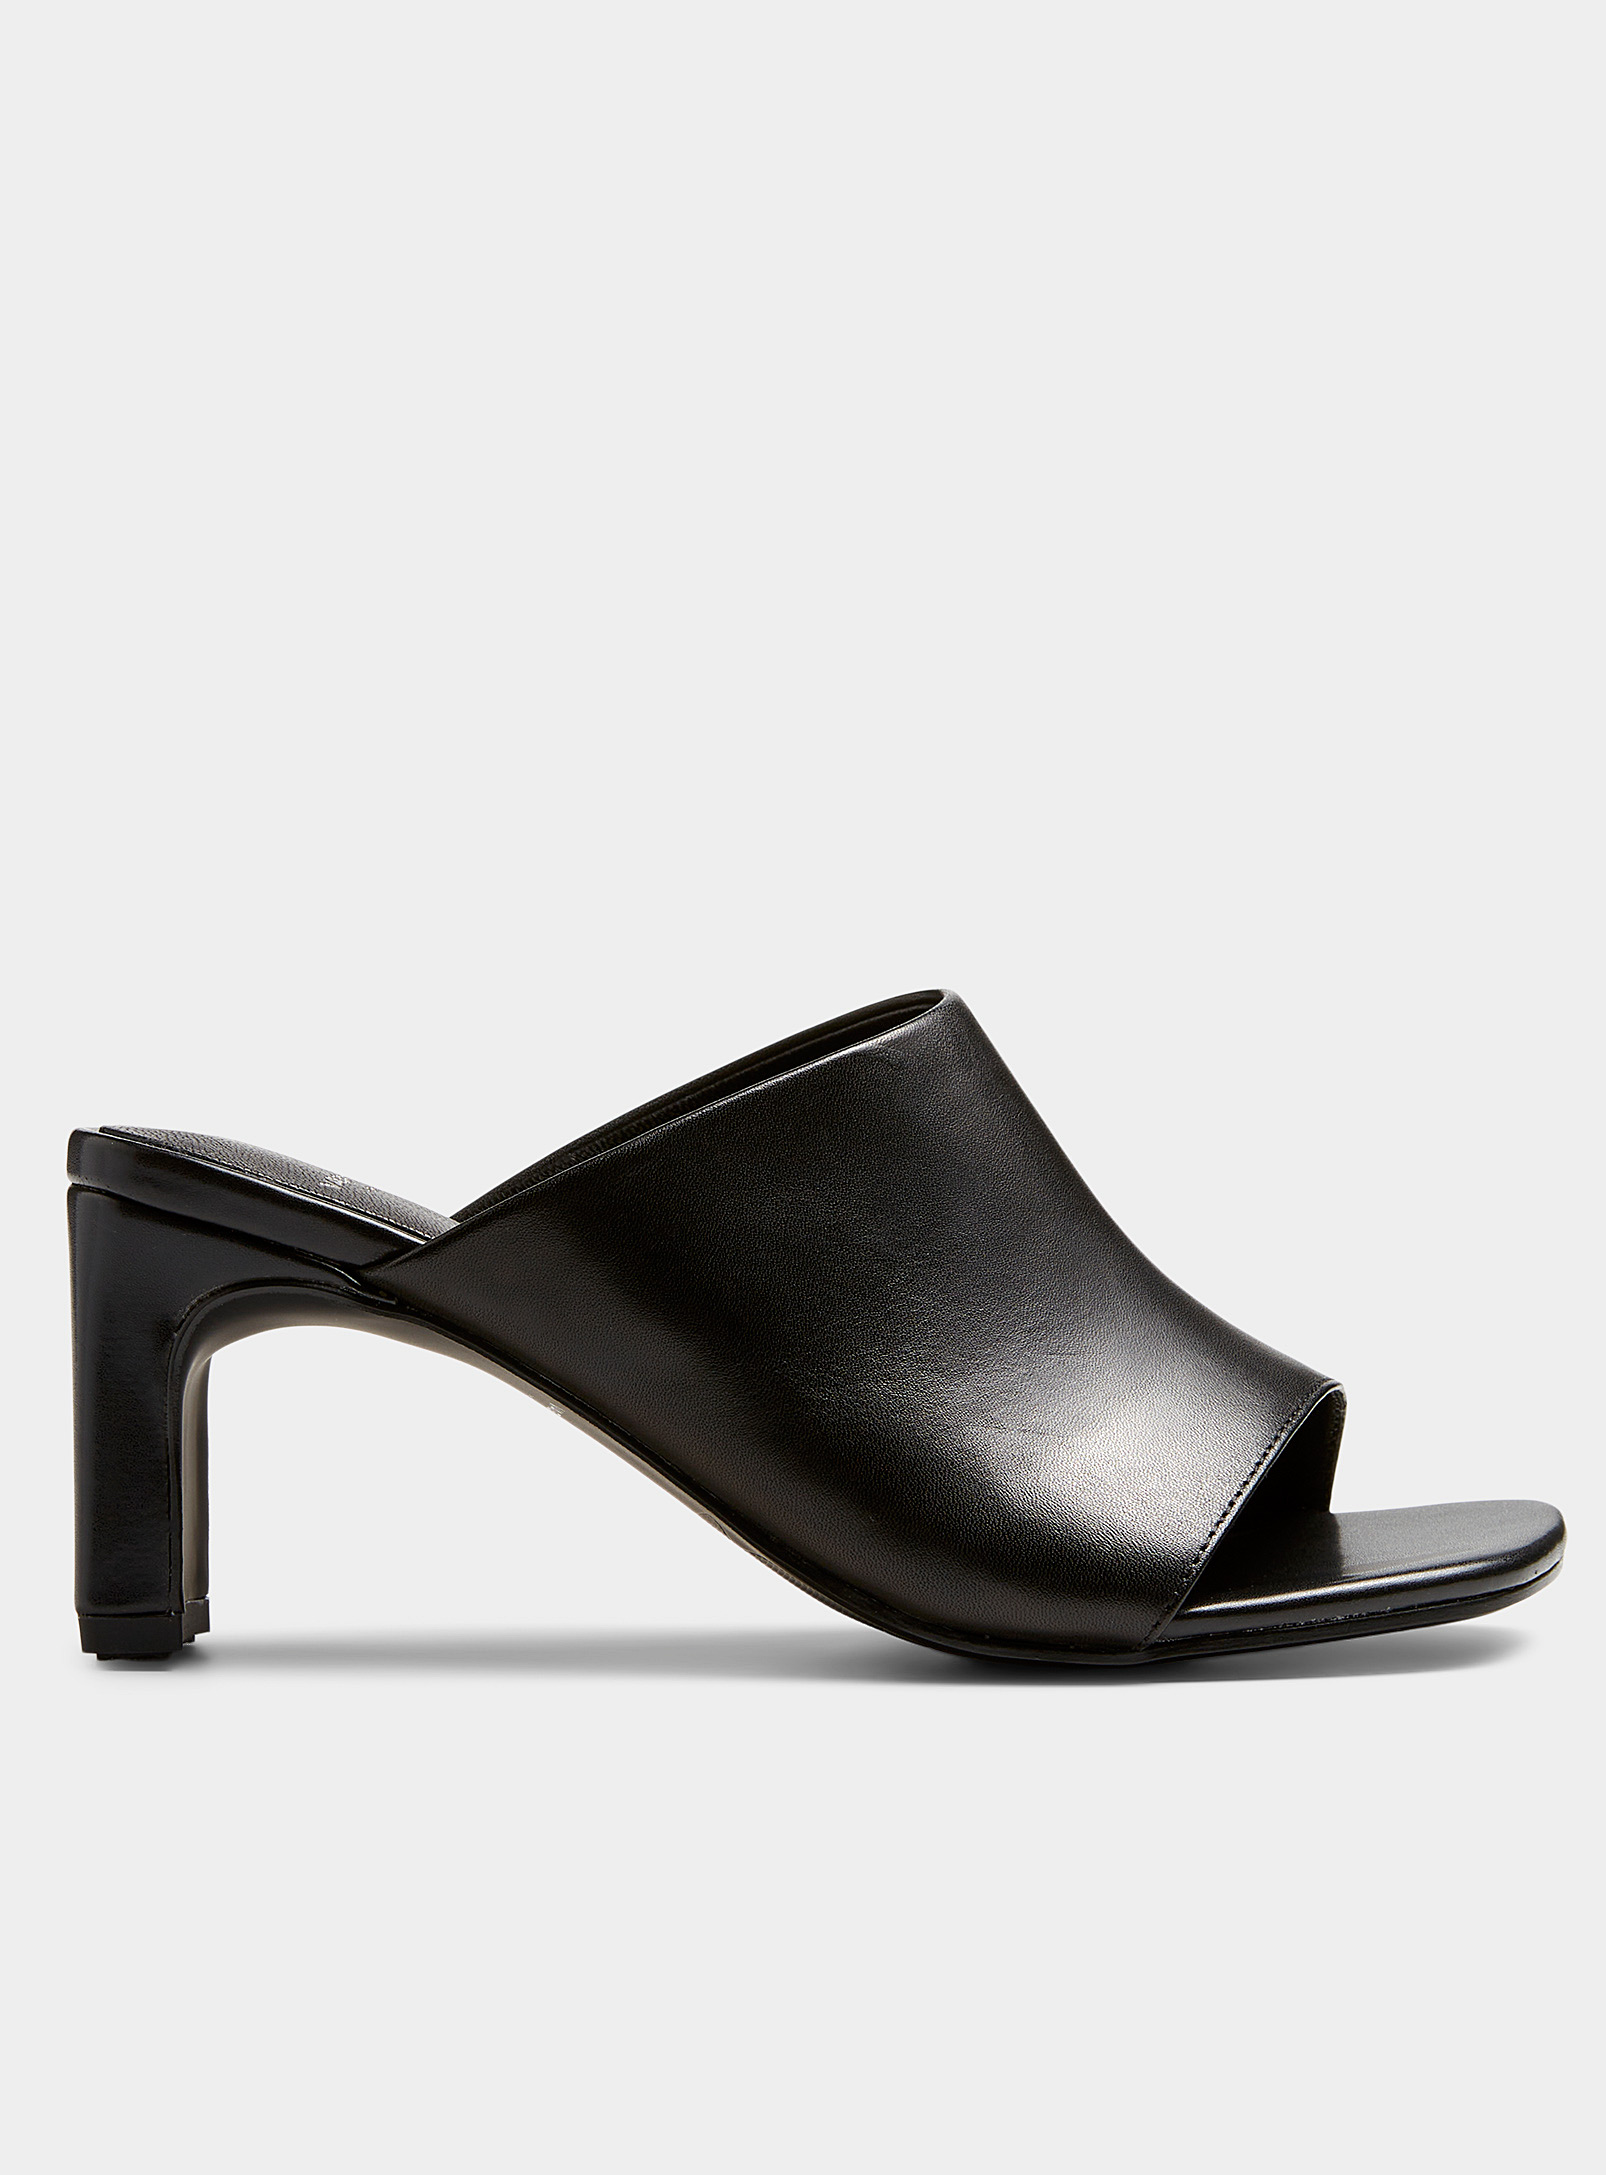 Vagabond Shoemakers - Women's mule sandals Women | Galeries de la Capitale